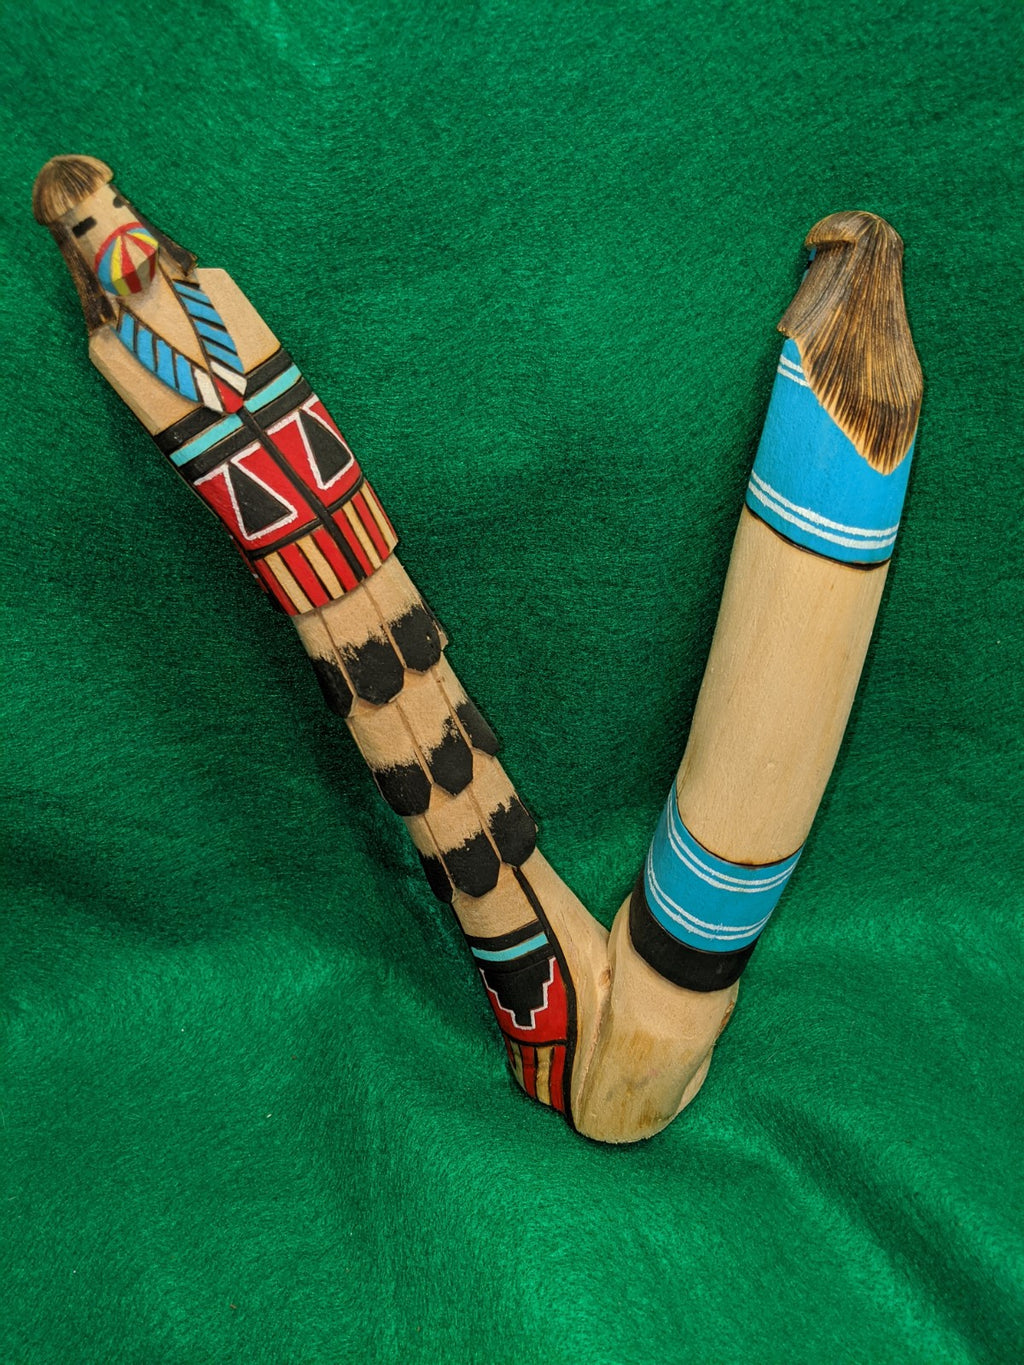 Hopi Indian Carved Wooden Salako Dancer Kachina, artist signed